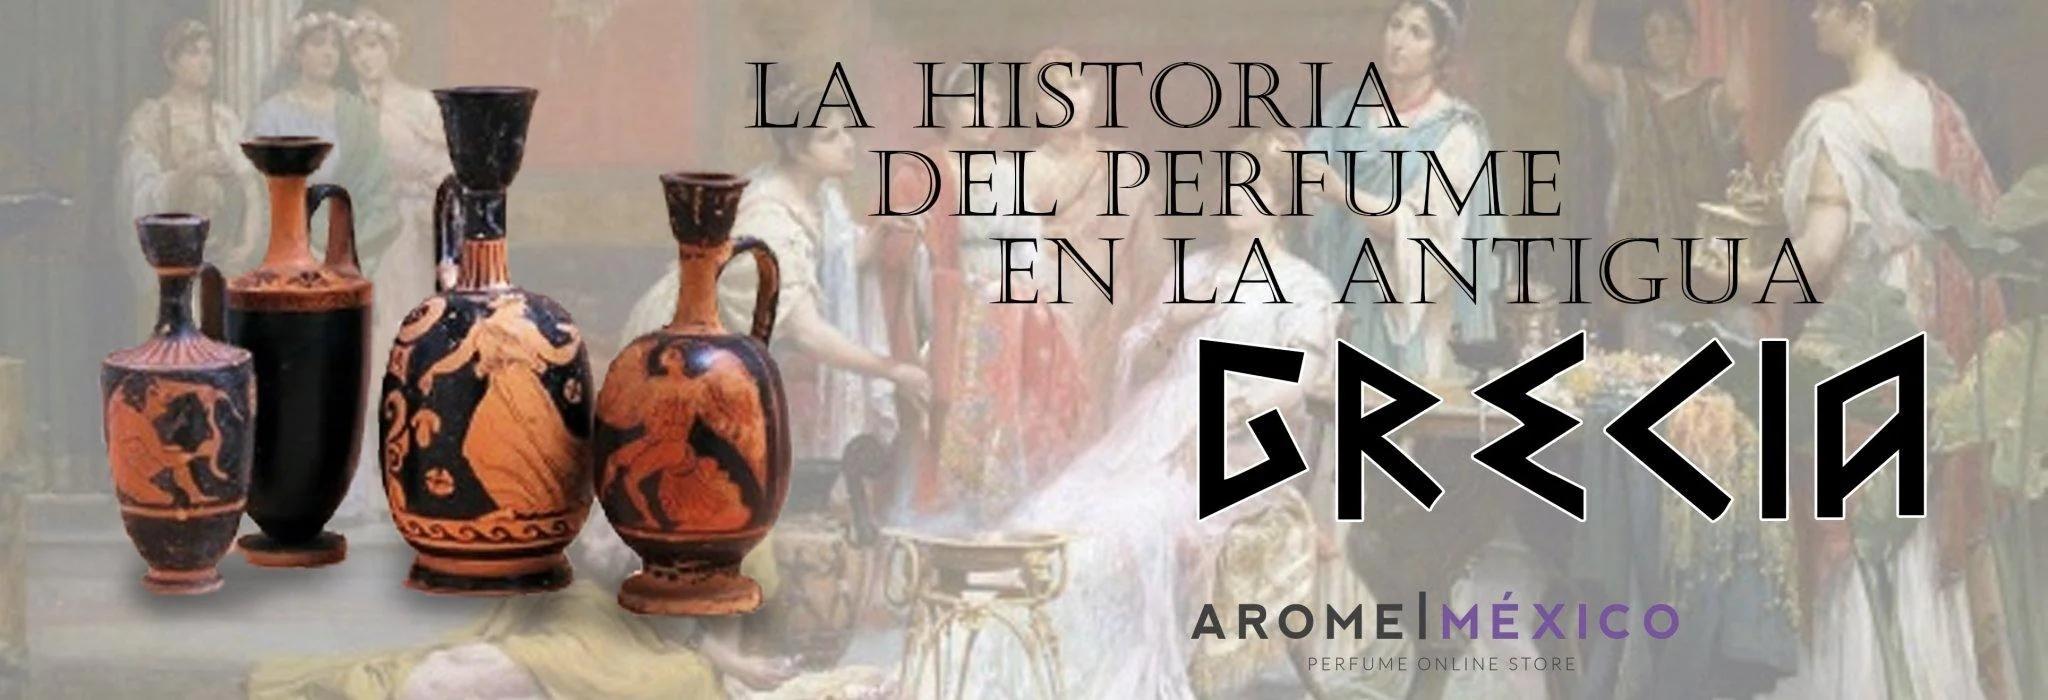 perfume en griego - Cómo se dice perfume en latín